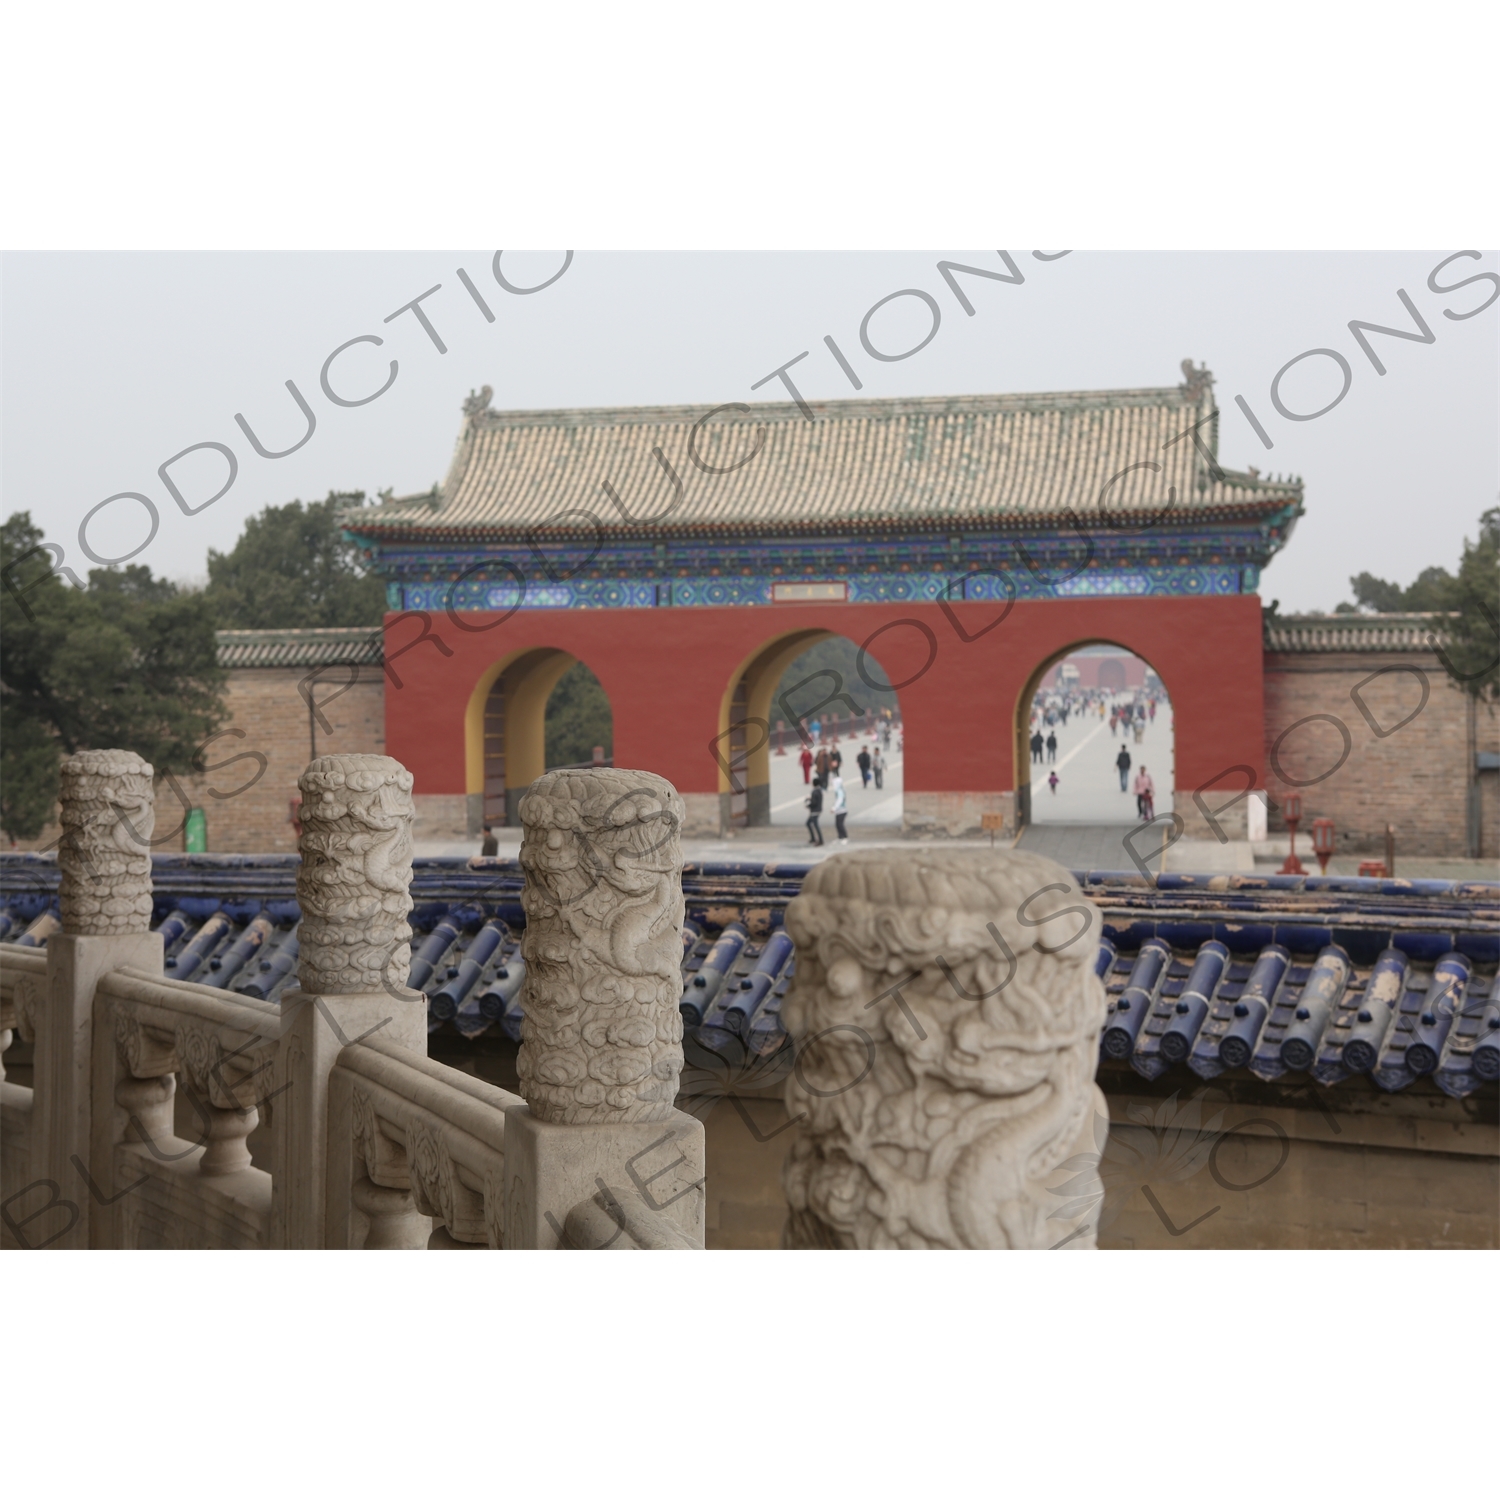 Danbi Bridge/Sacred Way and Chengzhen Gate (Chengzhen Men) in the Temple of Heaven (Tiantan) in Beijing